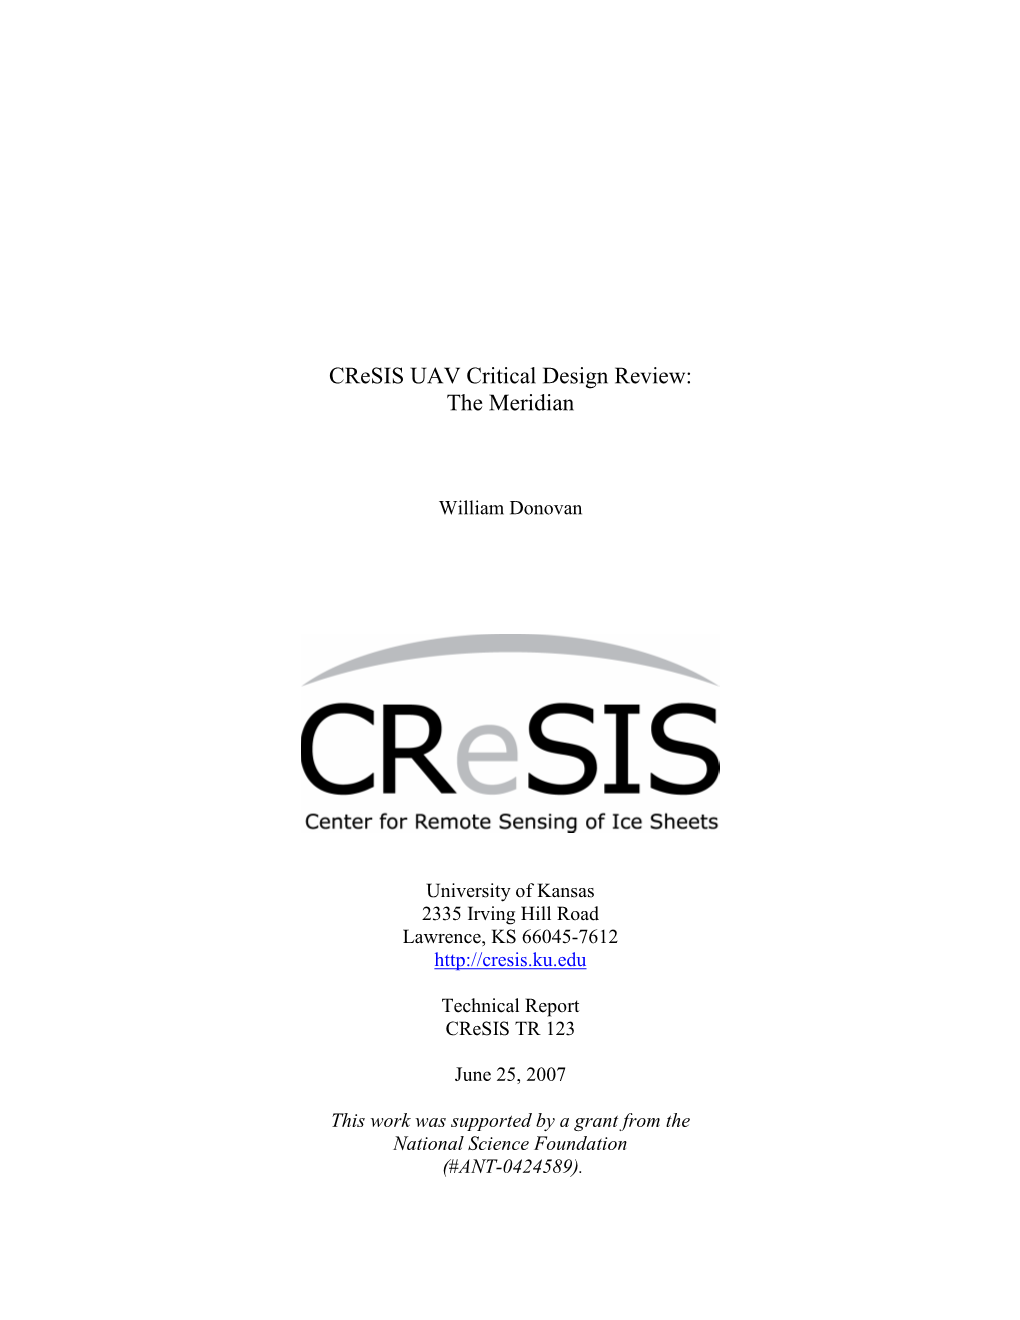 Cresis UAV Critical Design Review: the Meridian